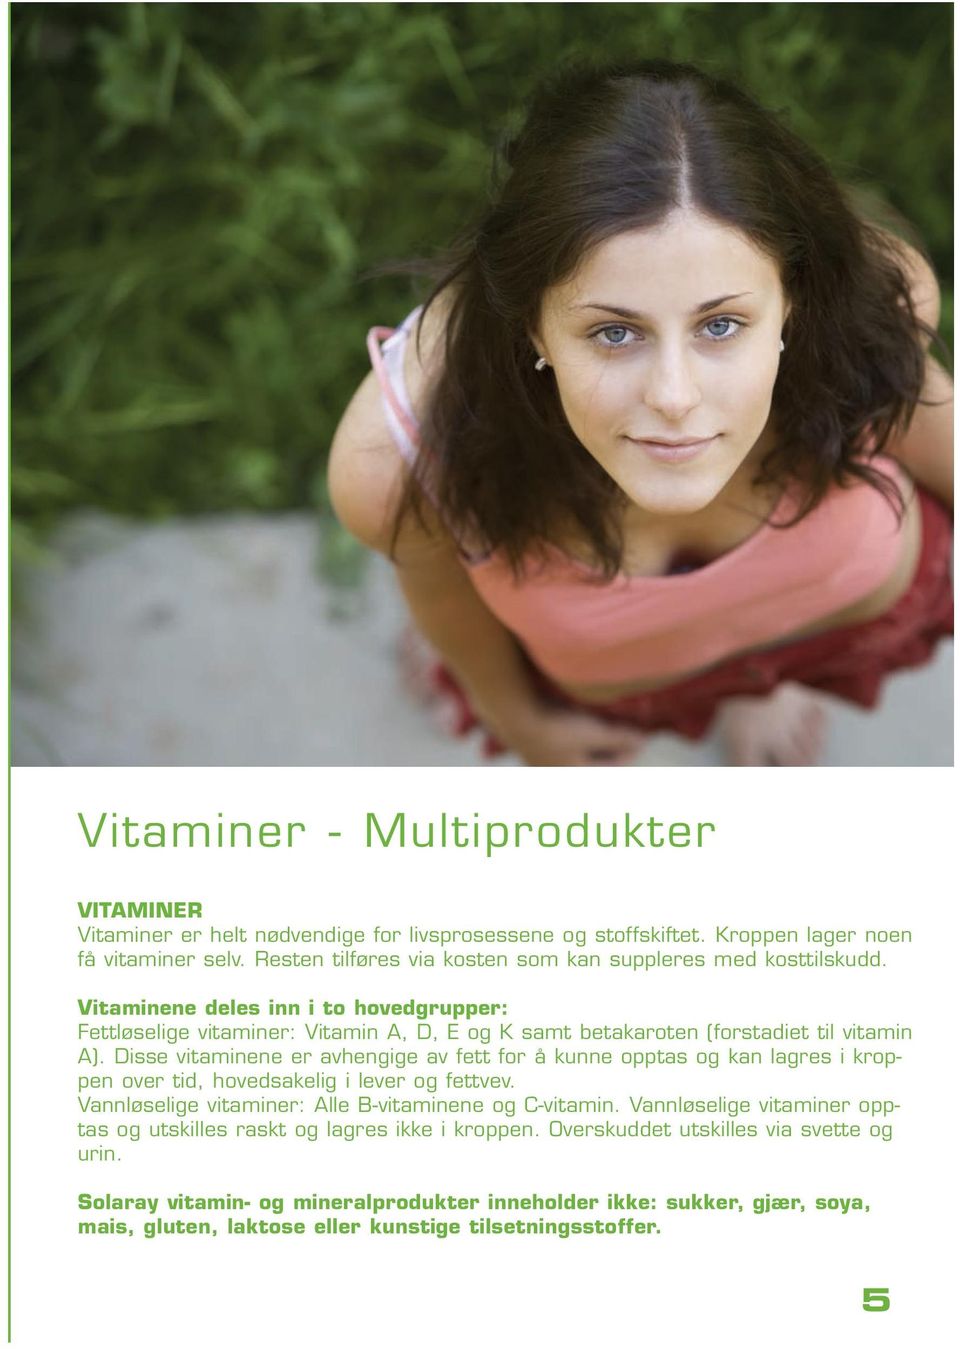 Vitaminene deles inn i to hovedgrupper: Fettløselige vitaminer: Vitamin A, D, E og K samt betakaroten (forstadiet til vitamin A).